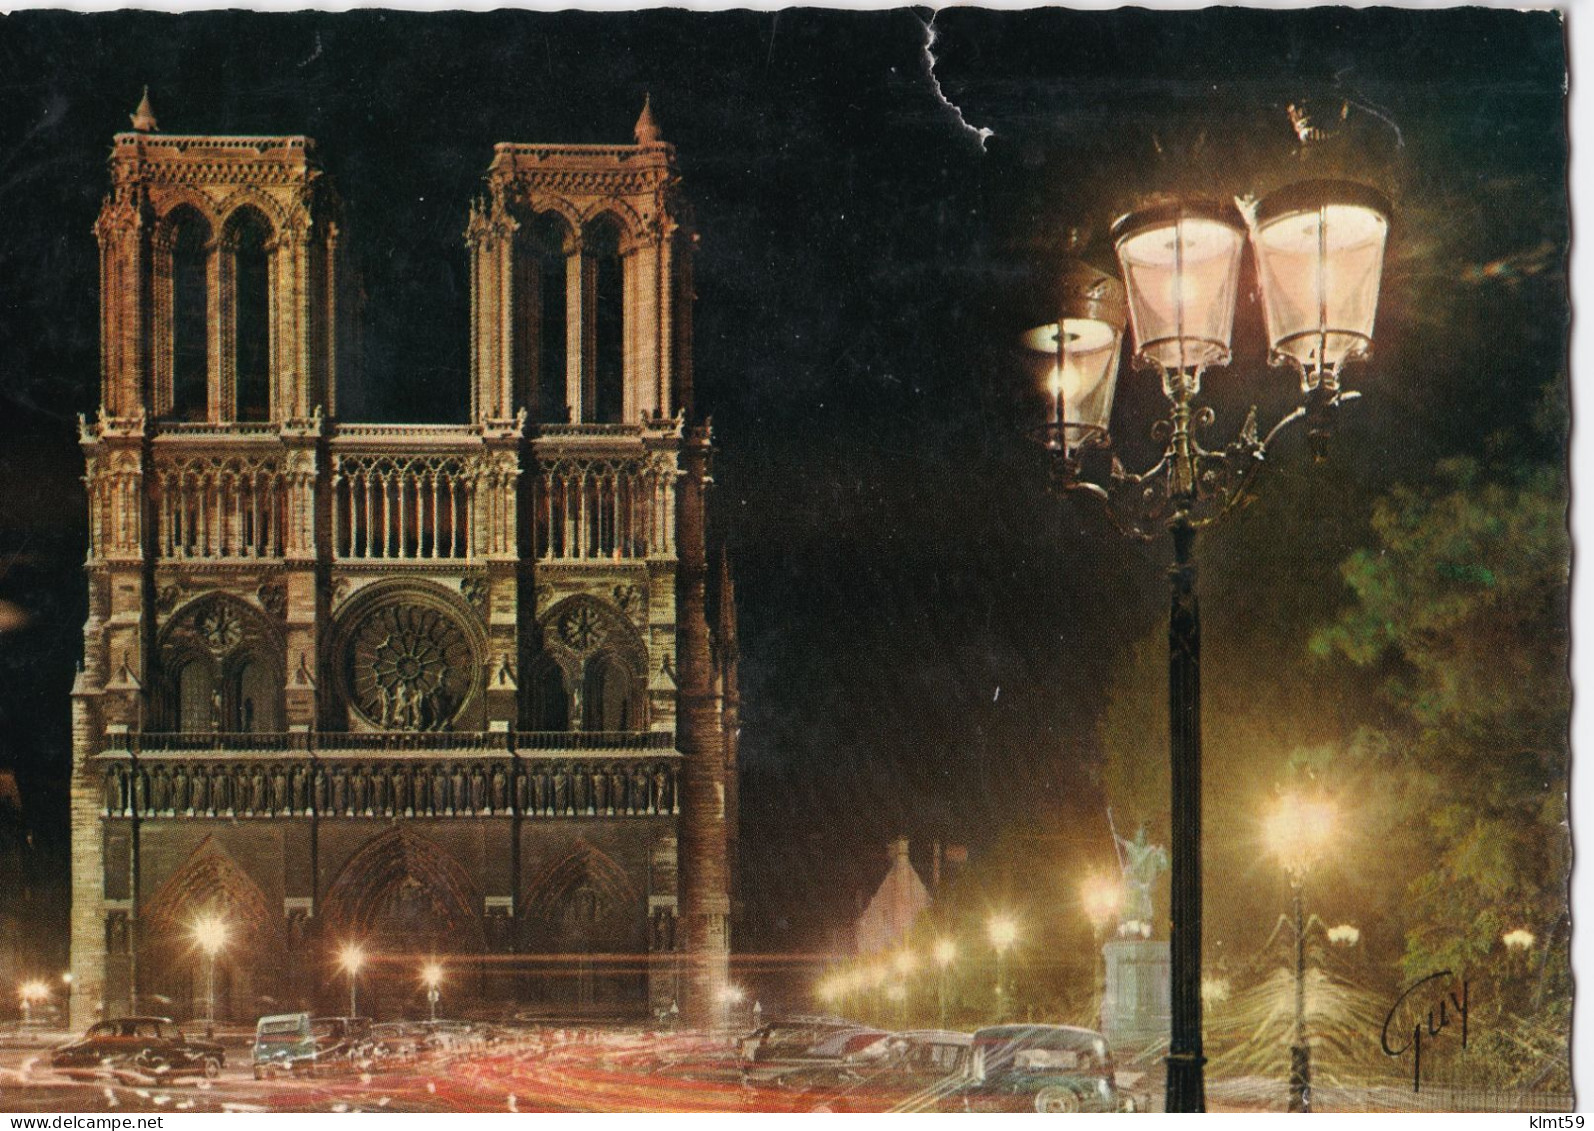 La Cathédrale Notre-Dame Vue De Nuit - Paris By Night